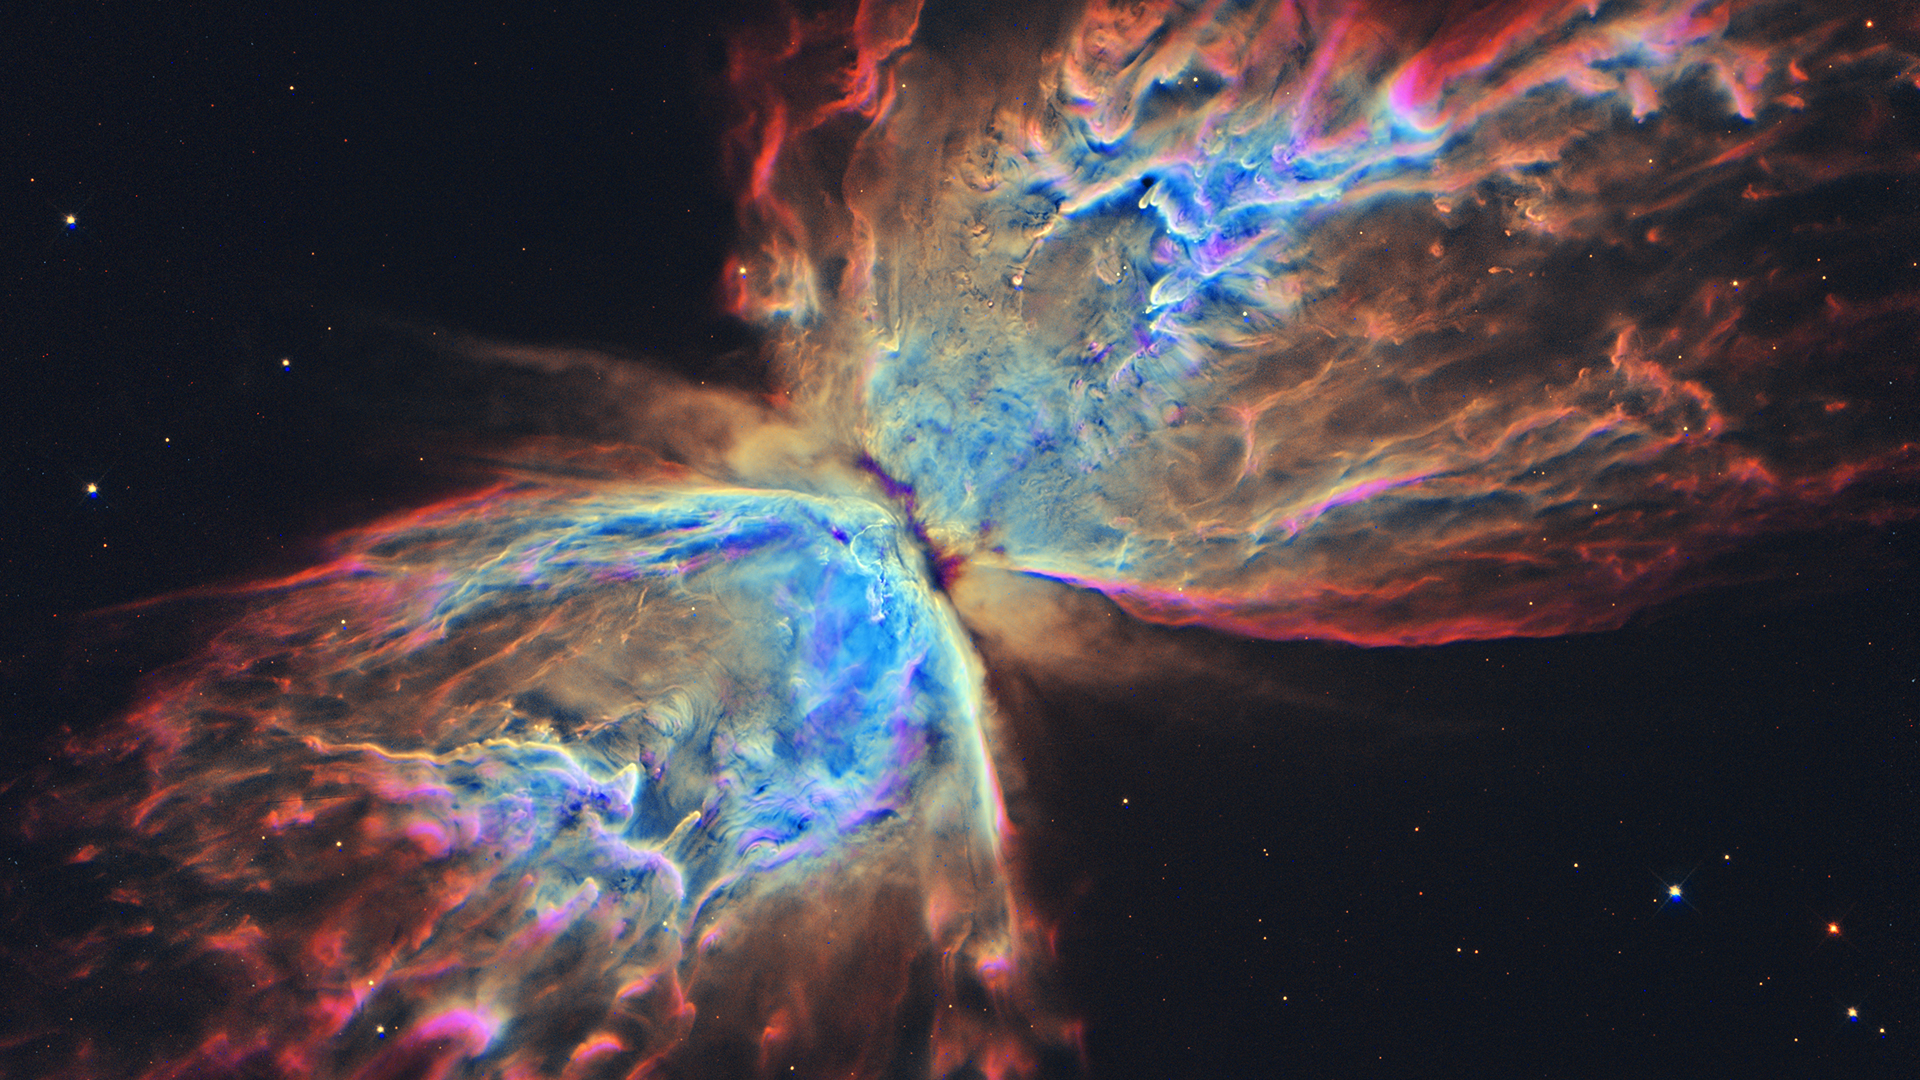 Nebula HD Wallpaper | 1920x1080 | ID:48899